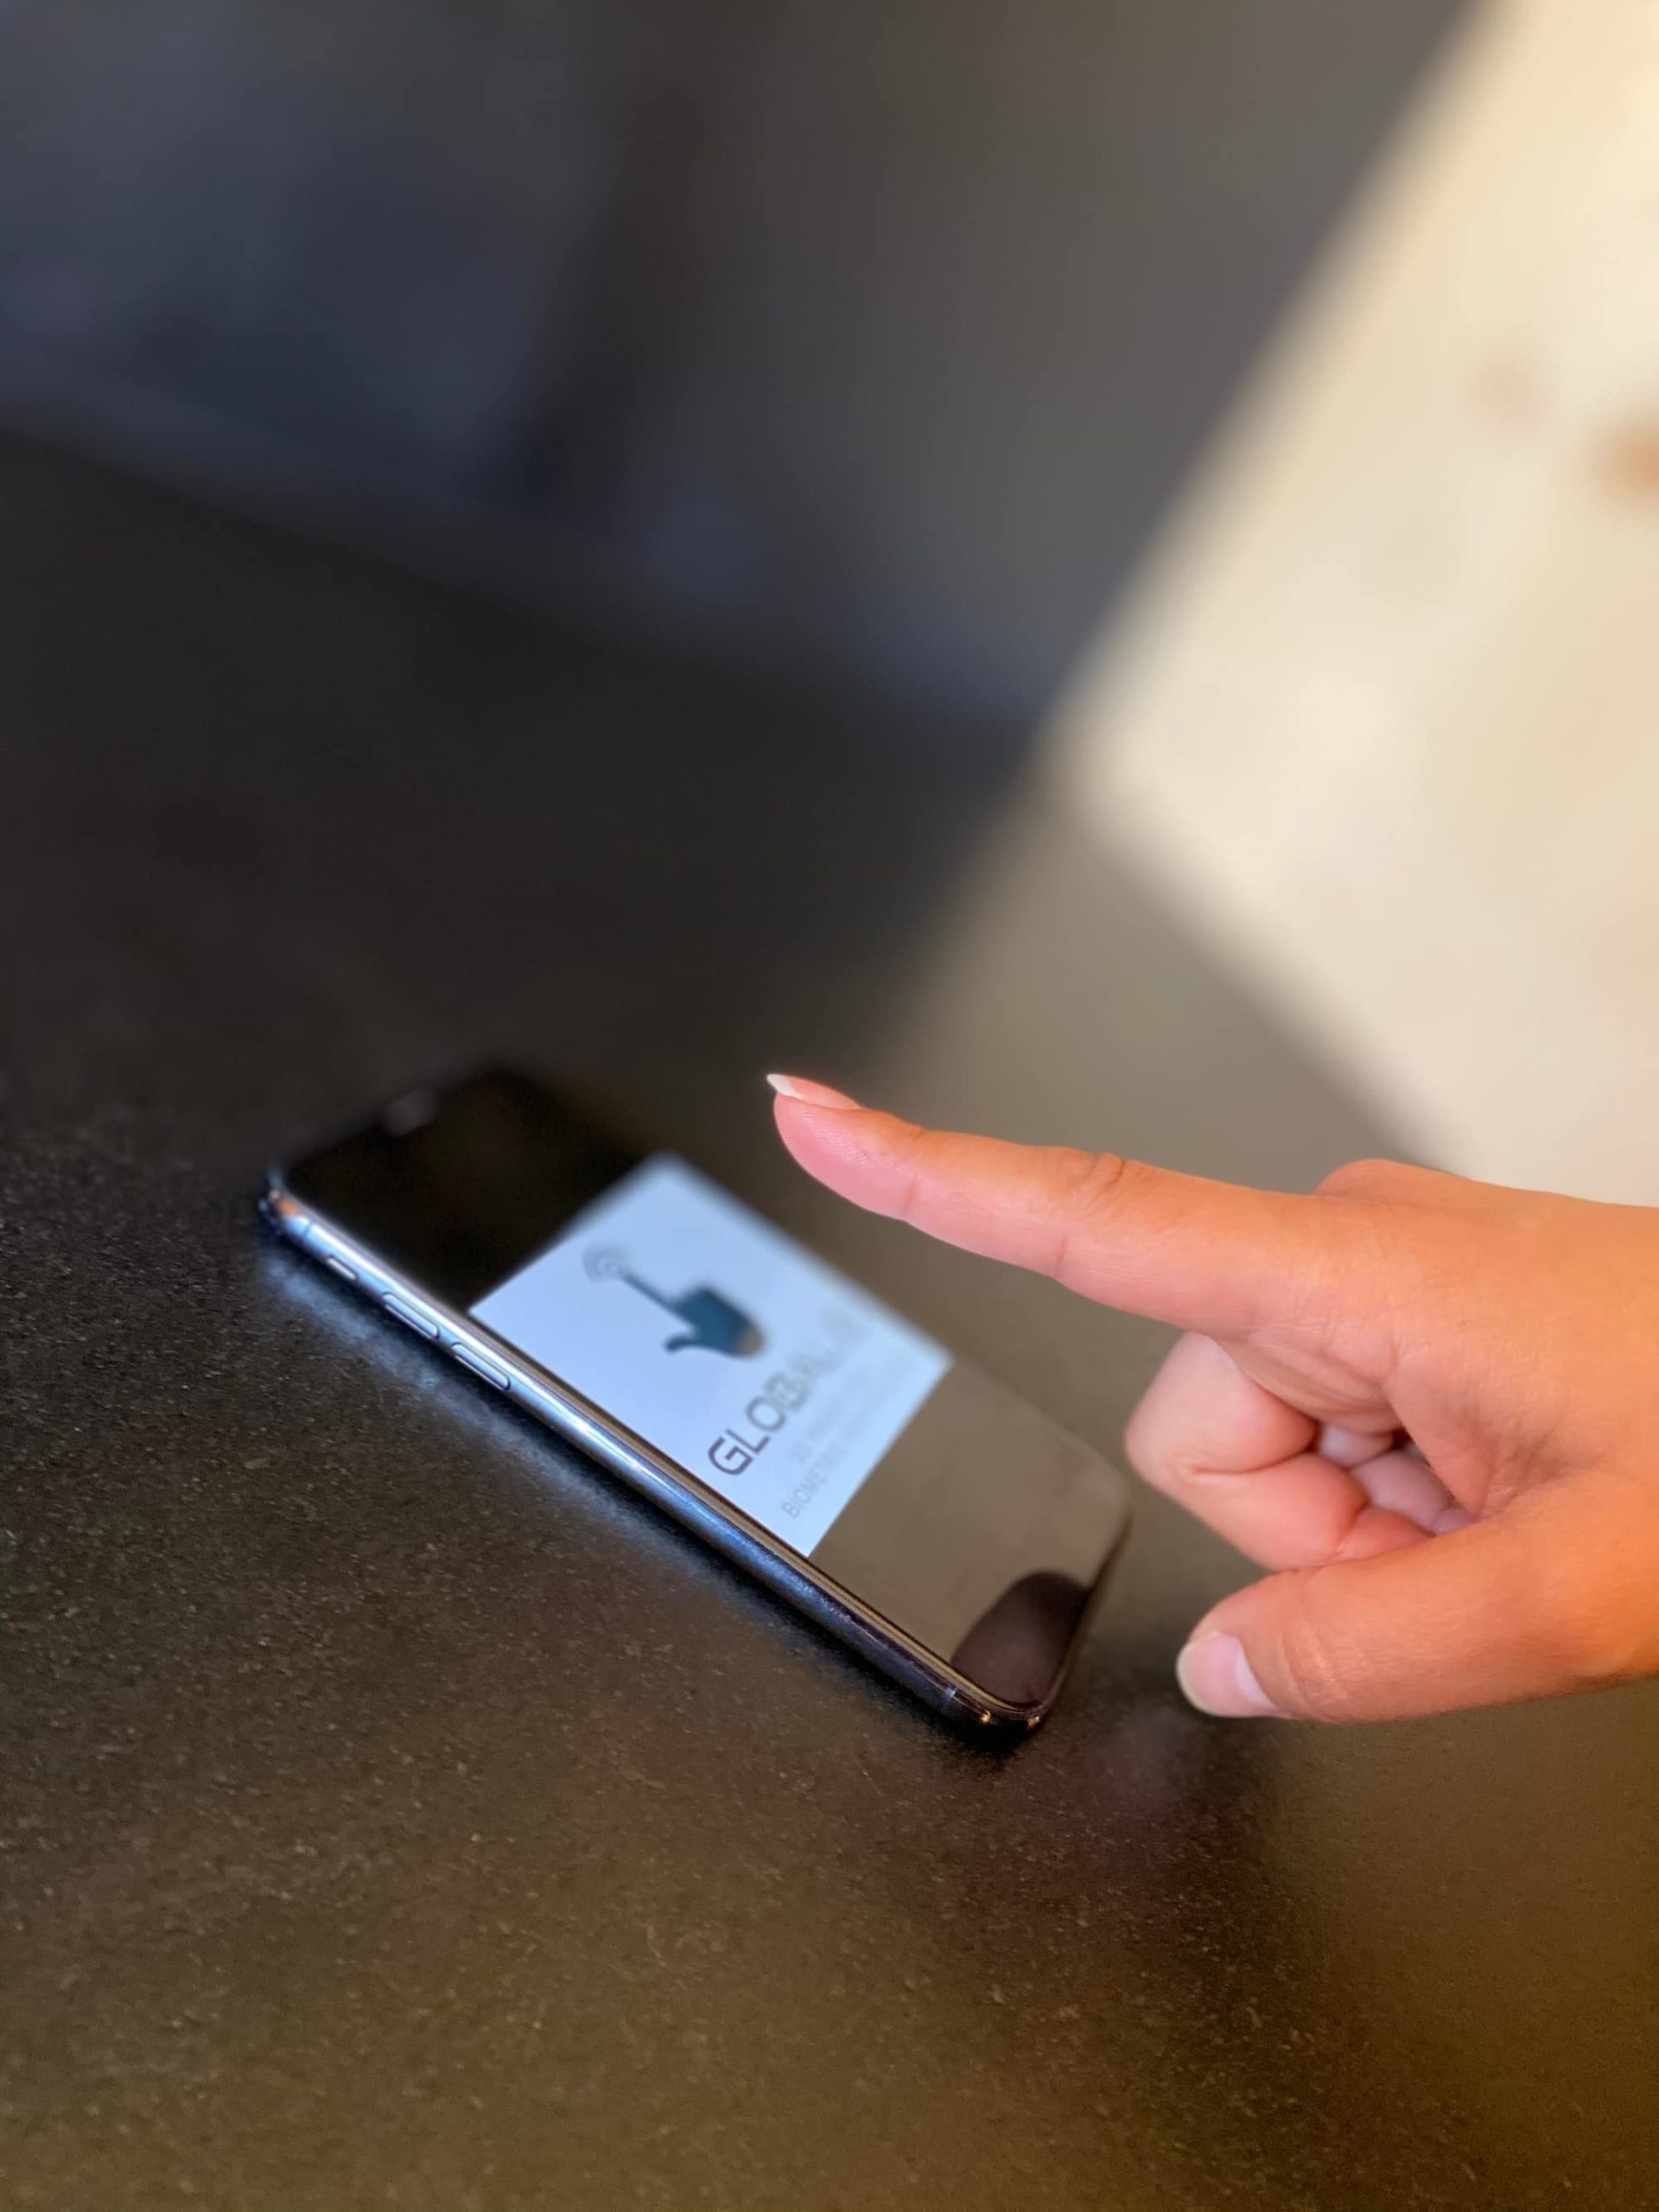 You are currently viewing Global ID et Idiap Research Institute développent un scanner biométrique de veine sans contact pour les hôpitaux.